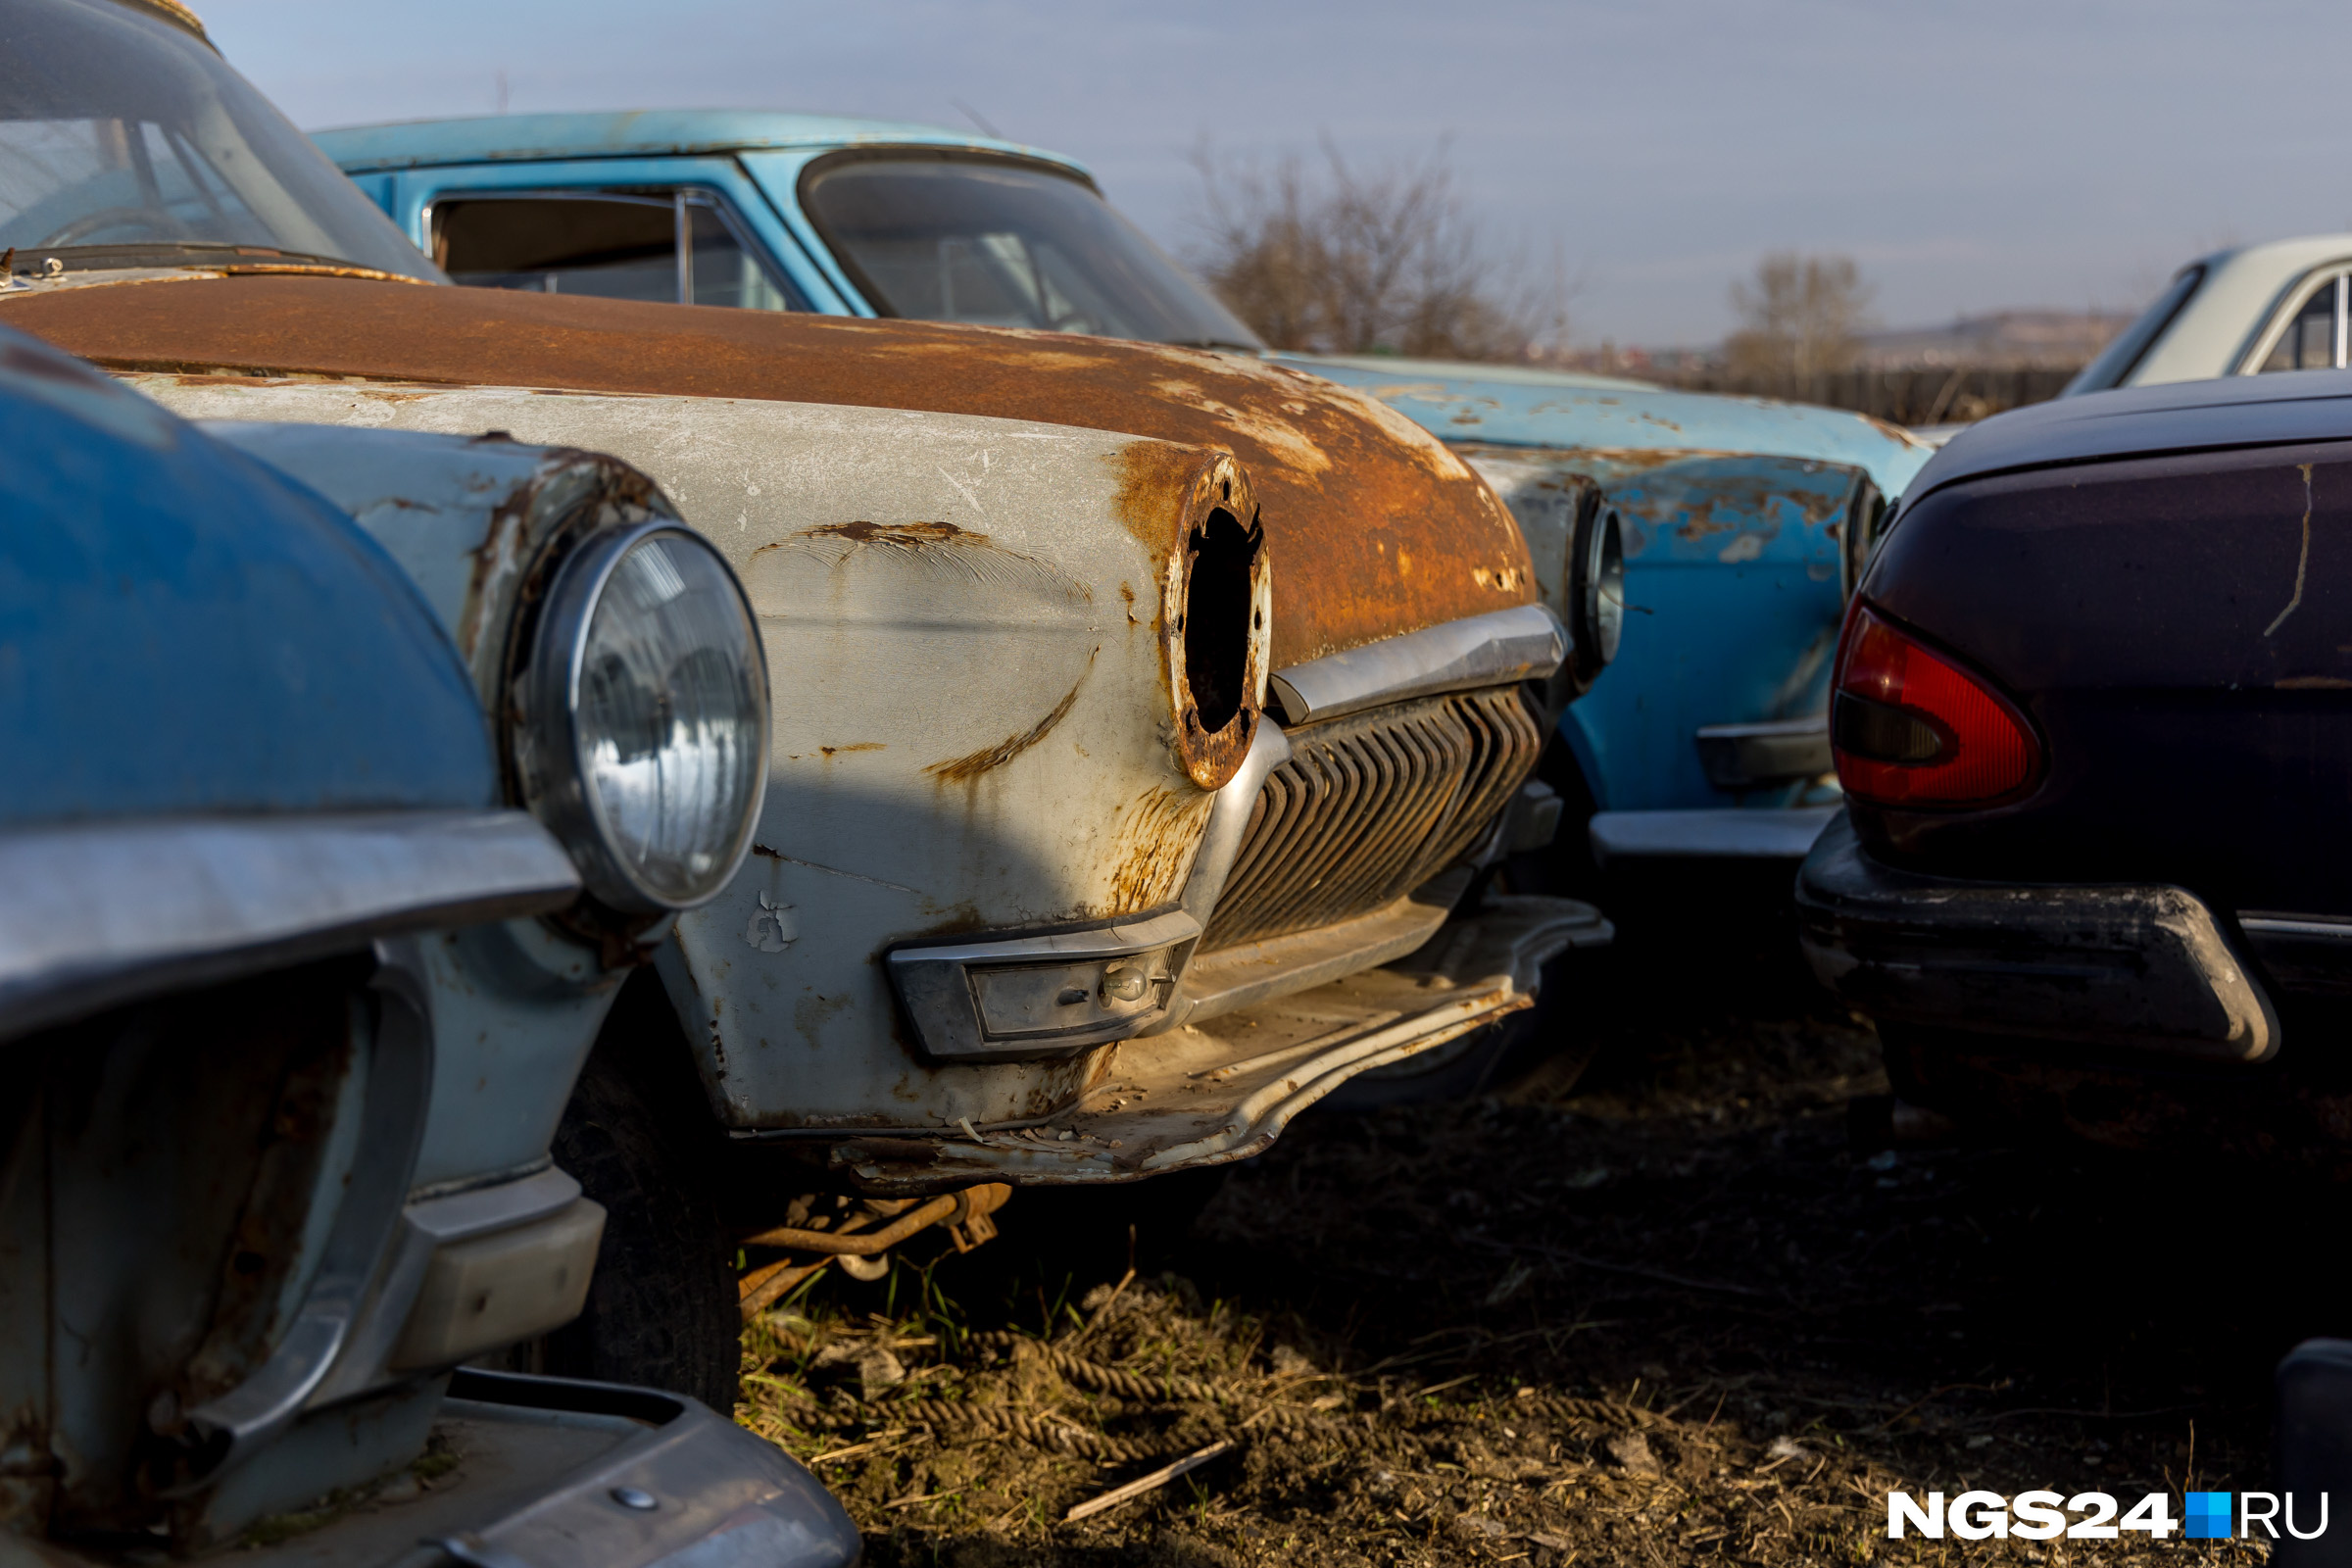 «Каждый день в машине тусовки». Брошенные автомобили Красноярска: как от них законно избавиться?